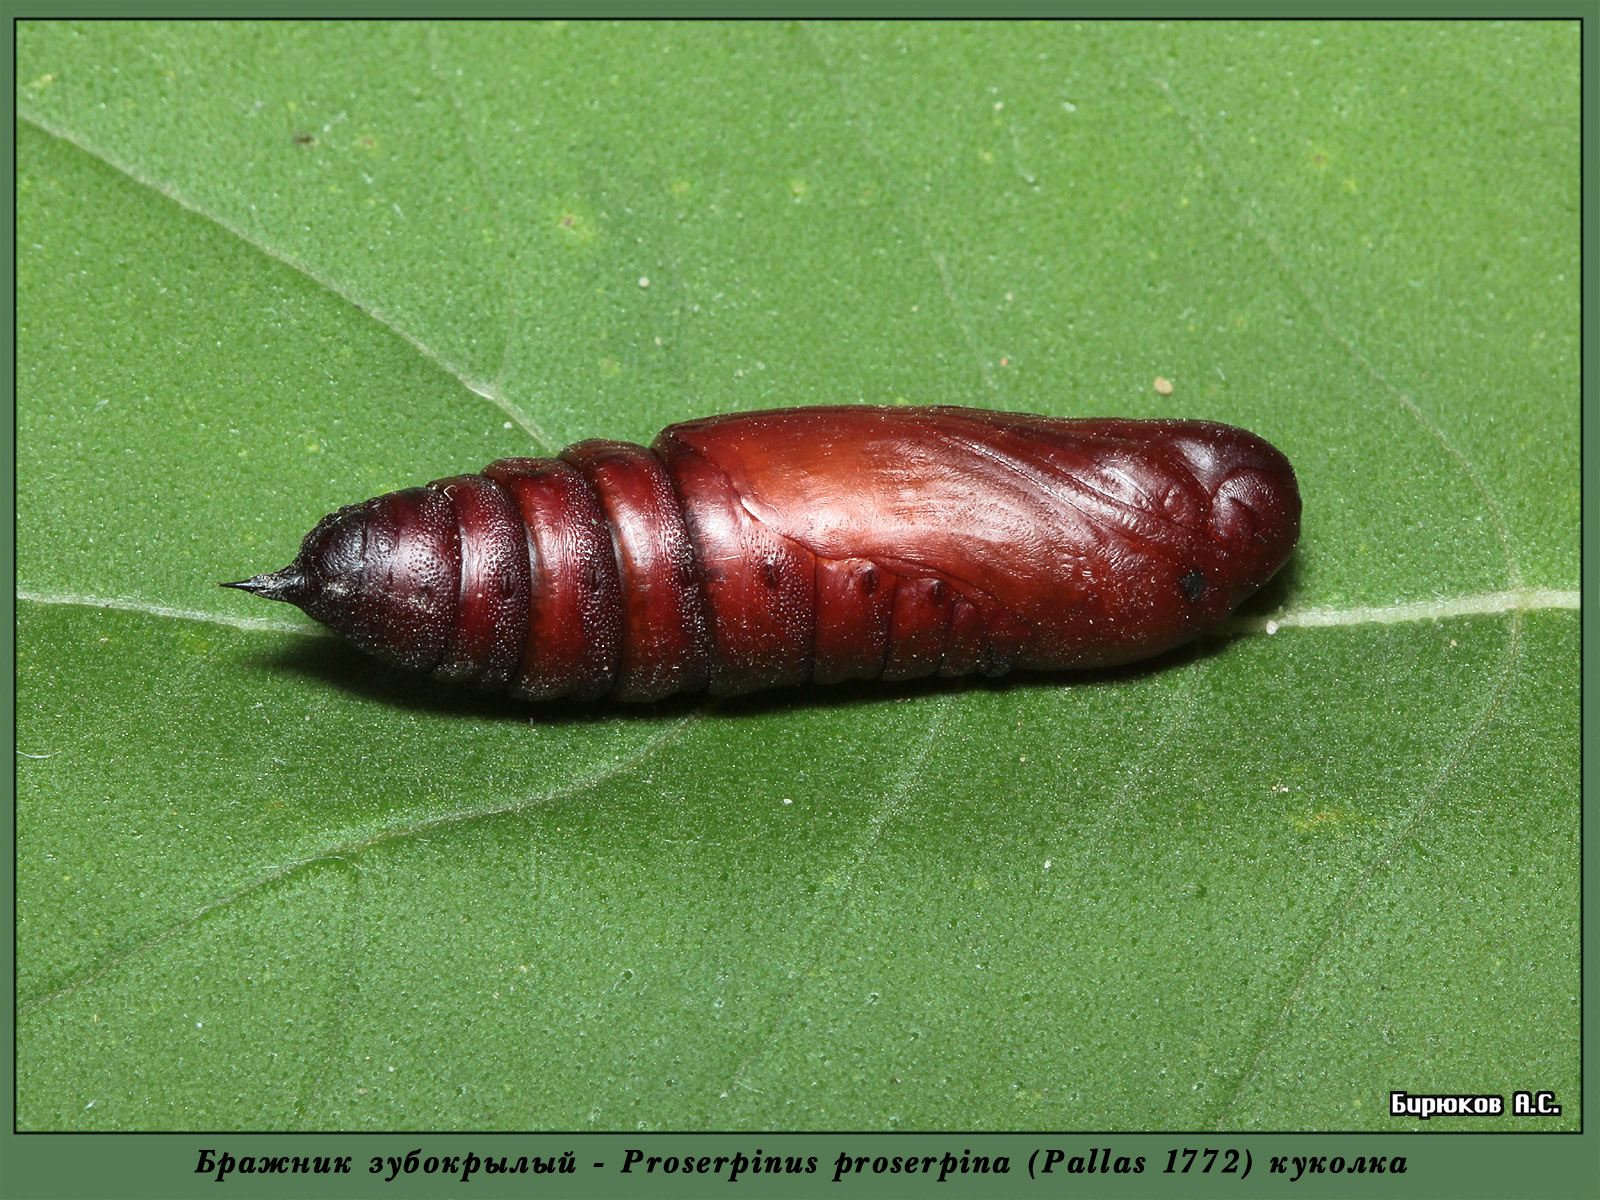 Proserpinus proserpina - Бражник Прозерпина